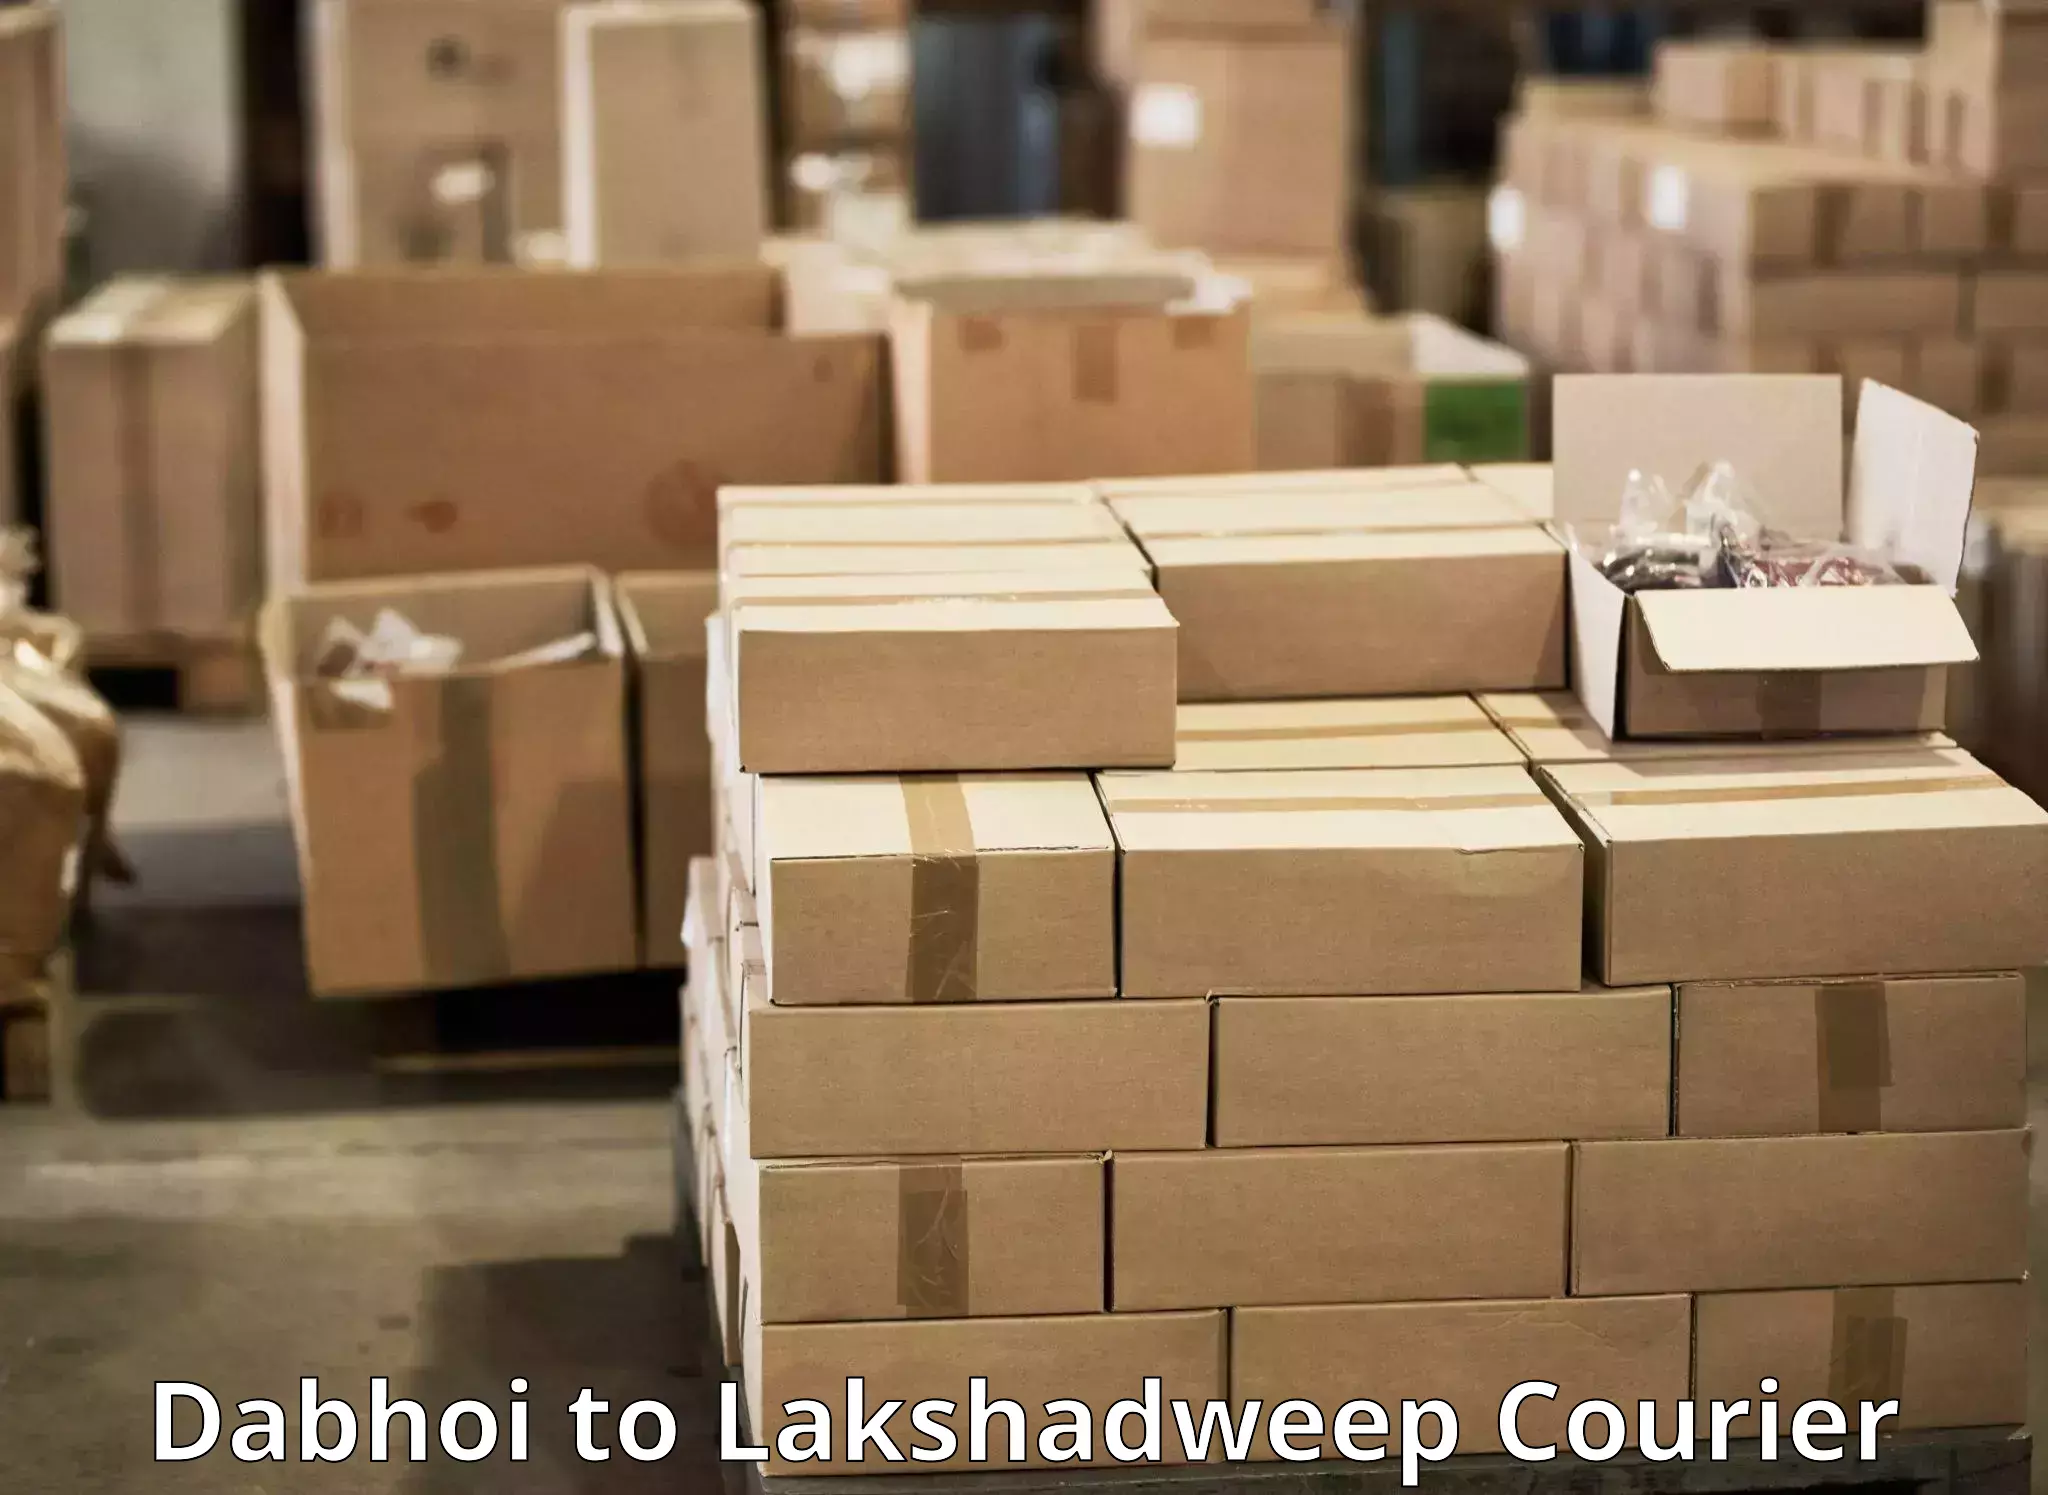 Logistics management Dabhoi to Lakshadweep